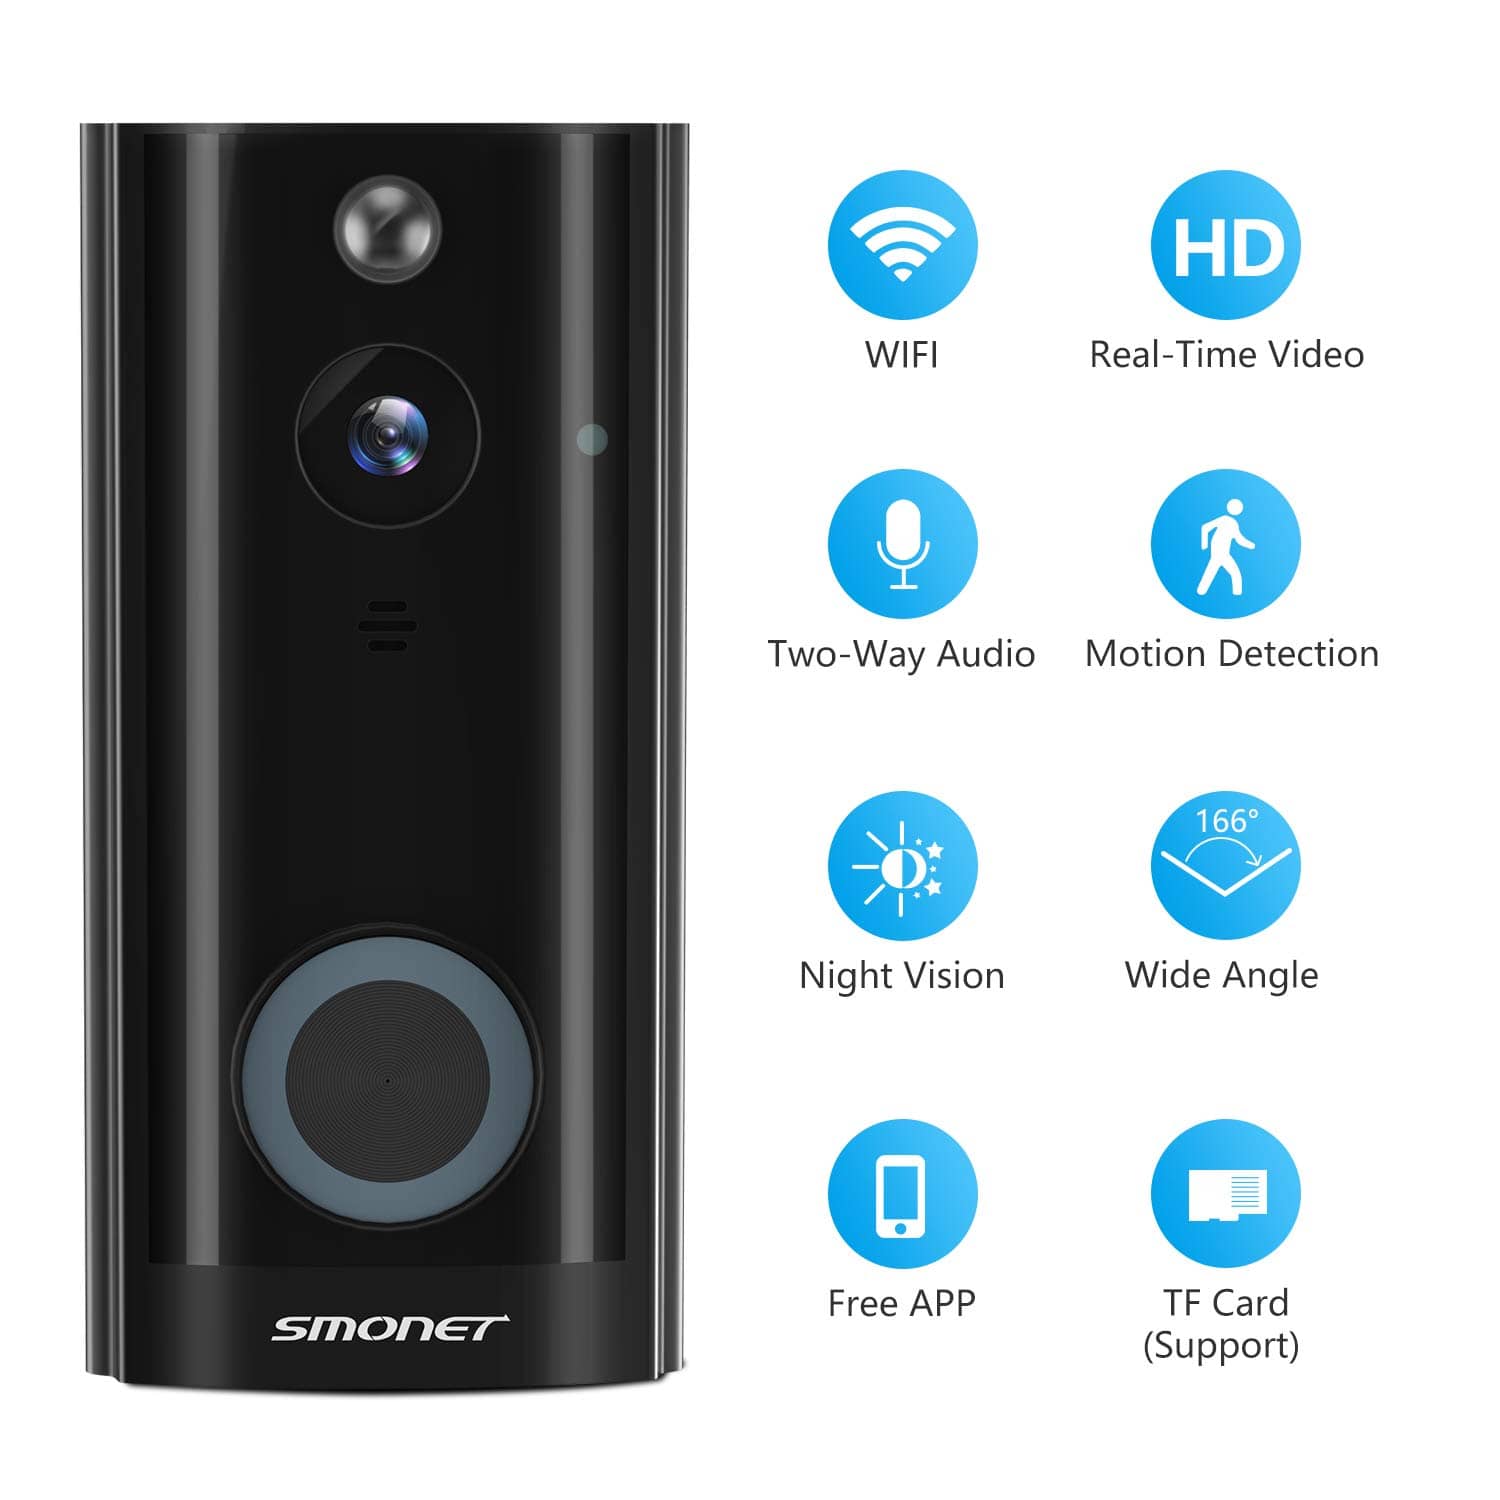 Smonet smart doorbell